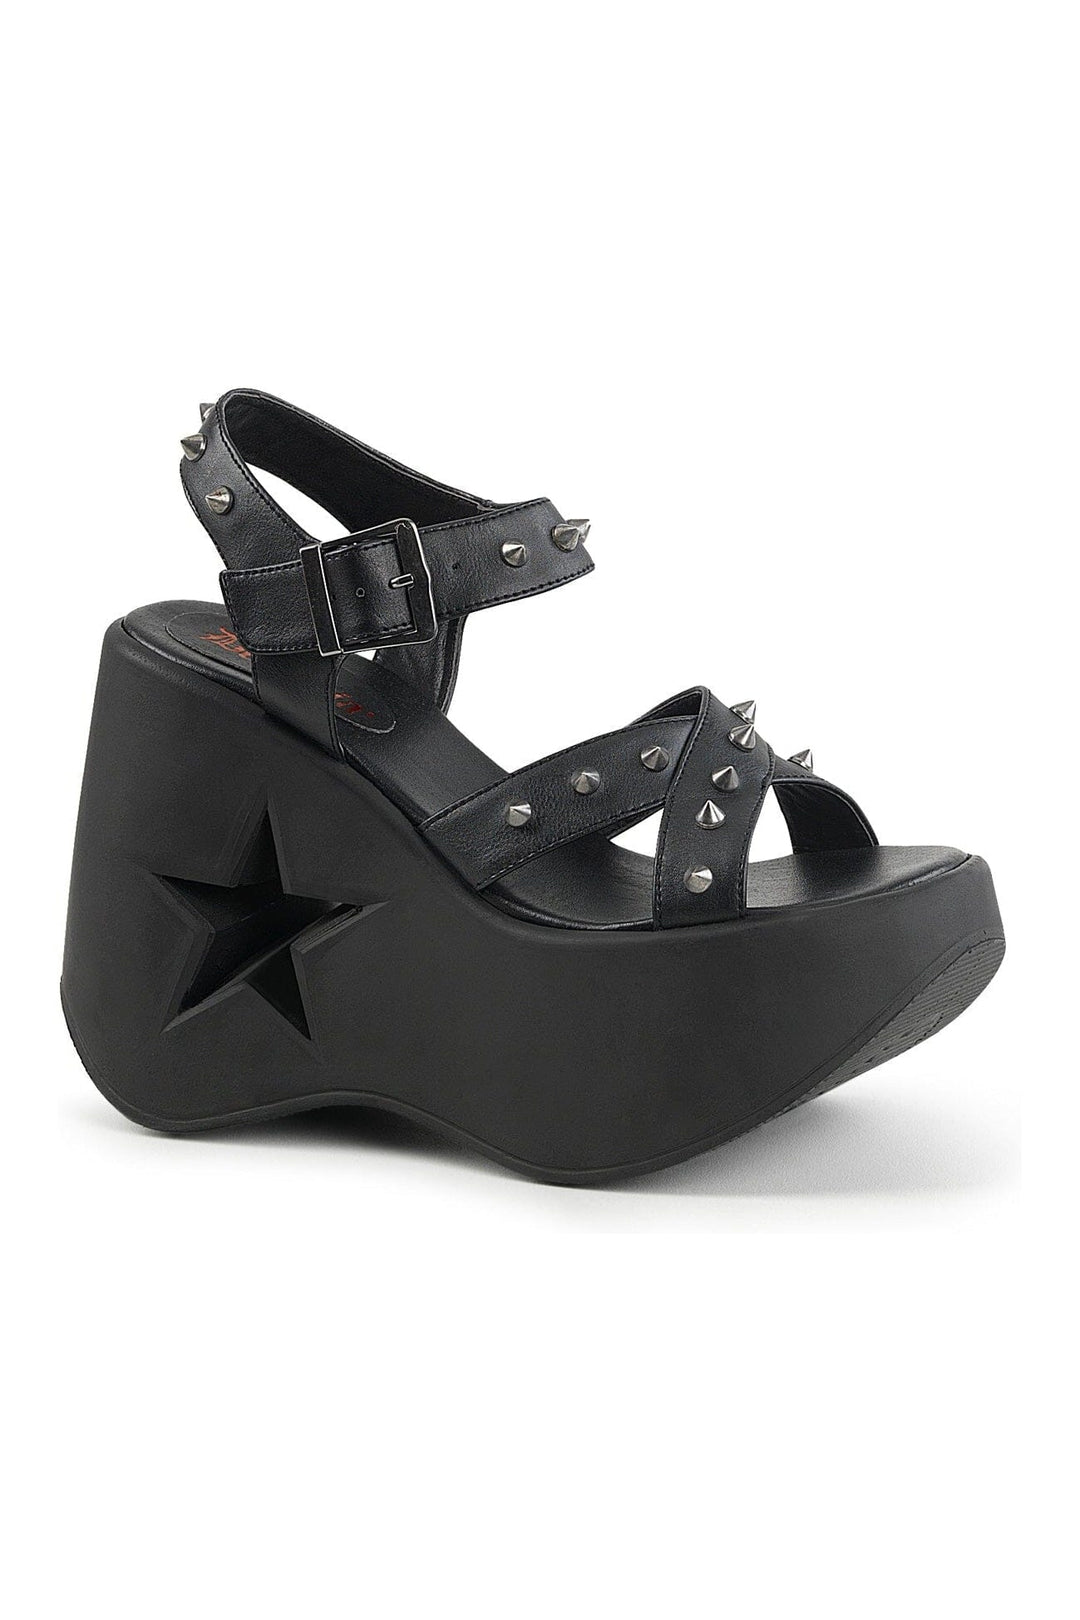 DYNAMITE-02 Black Vegan Leather Sandal-Sandals-Demonia-Black-11-Vegan Leather-SEXYSHOES.COM